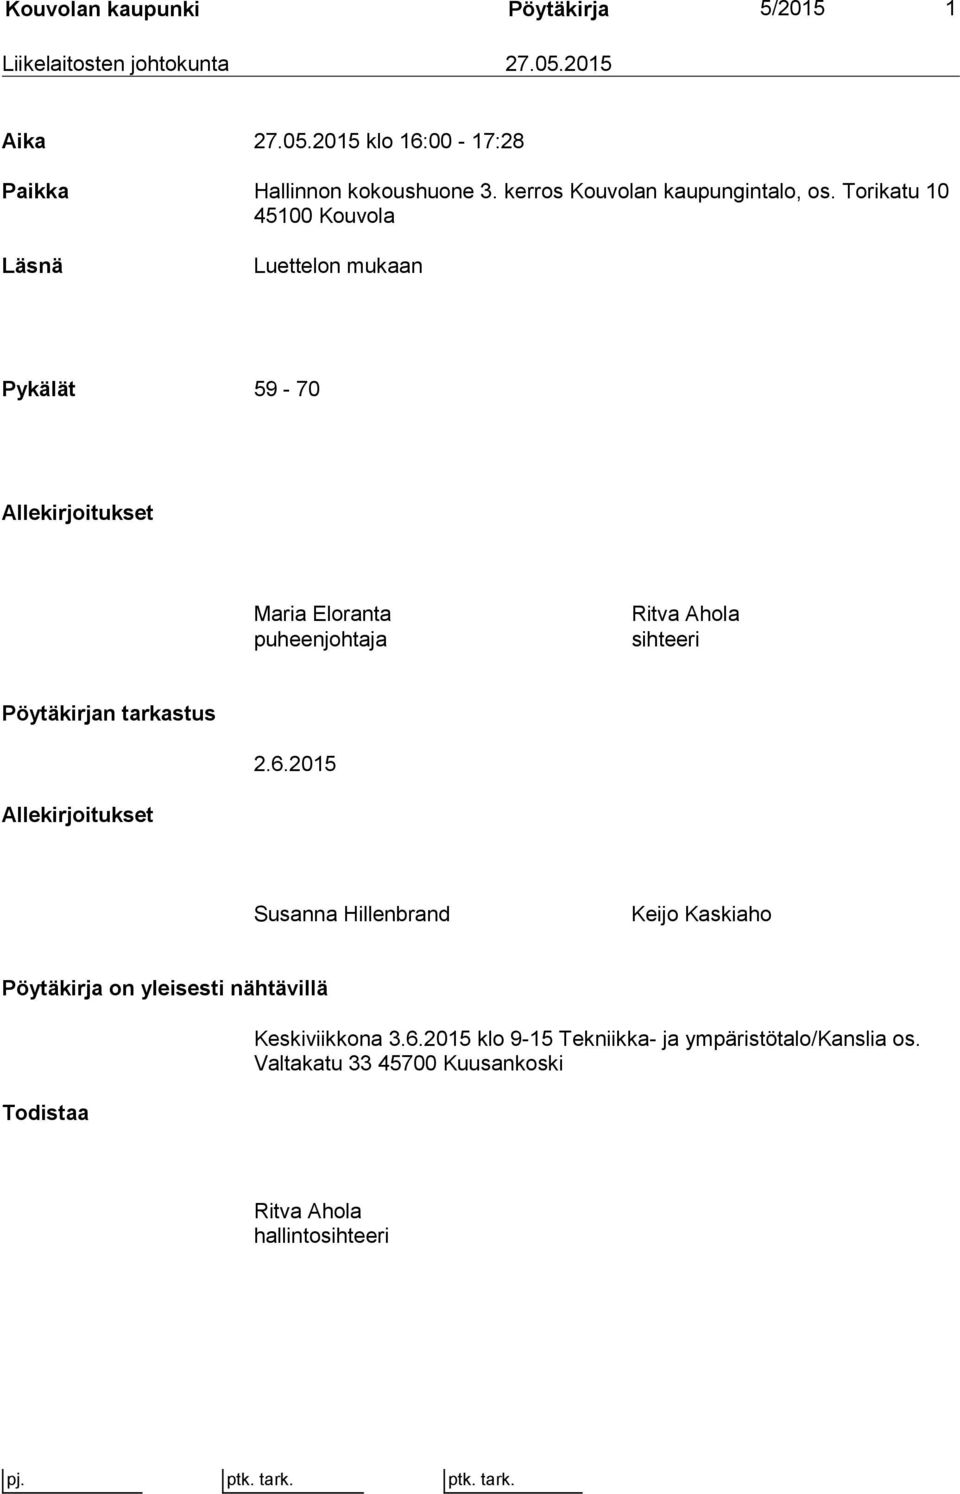 Torikatu 10 45100 Kouvola Läsnä Luettelon mukaan Pykälät 59-70 Allekirjoitukset Maria Eloranta puheenjohtaja Ritva Ahola sihteeri